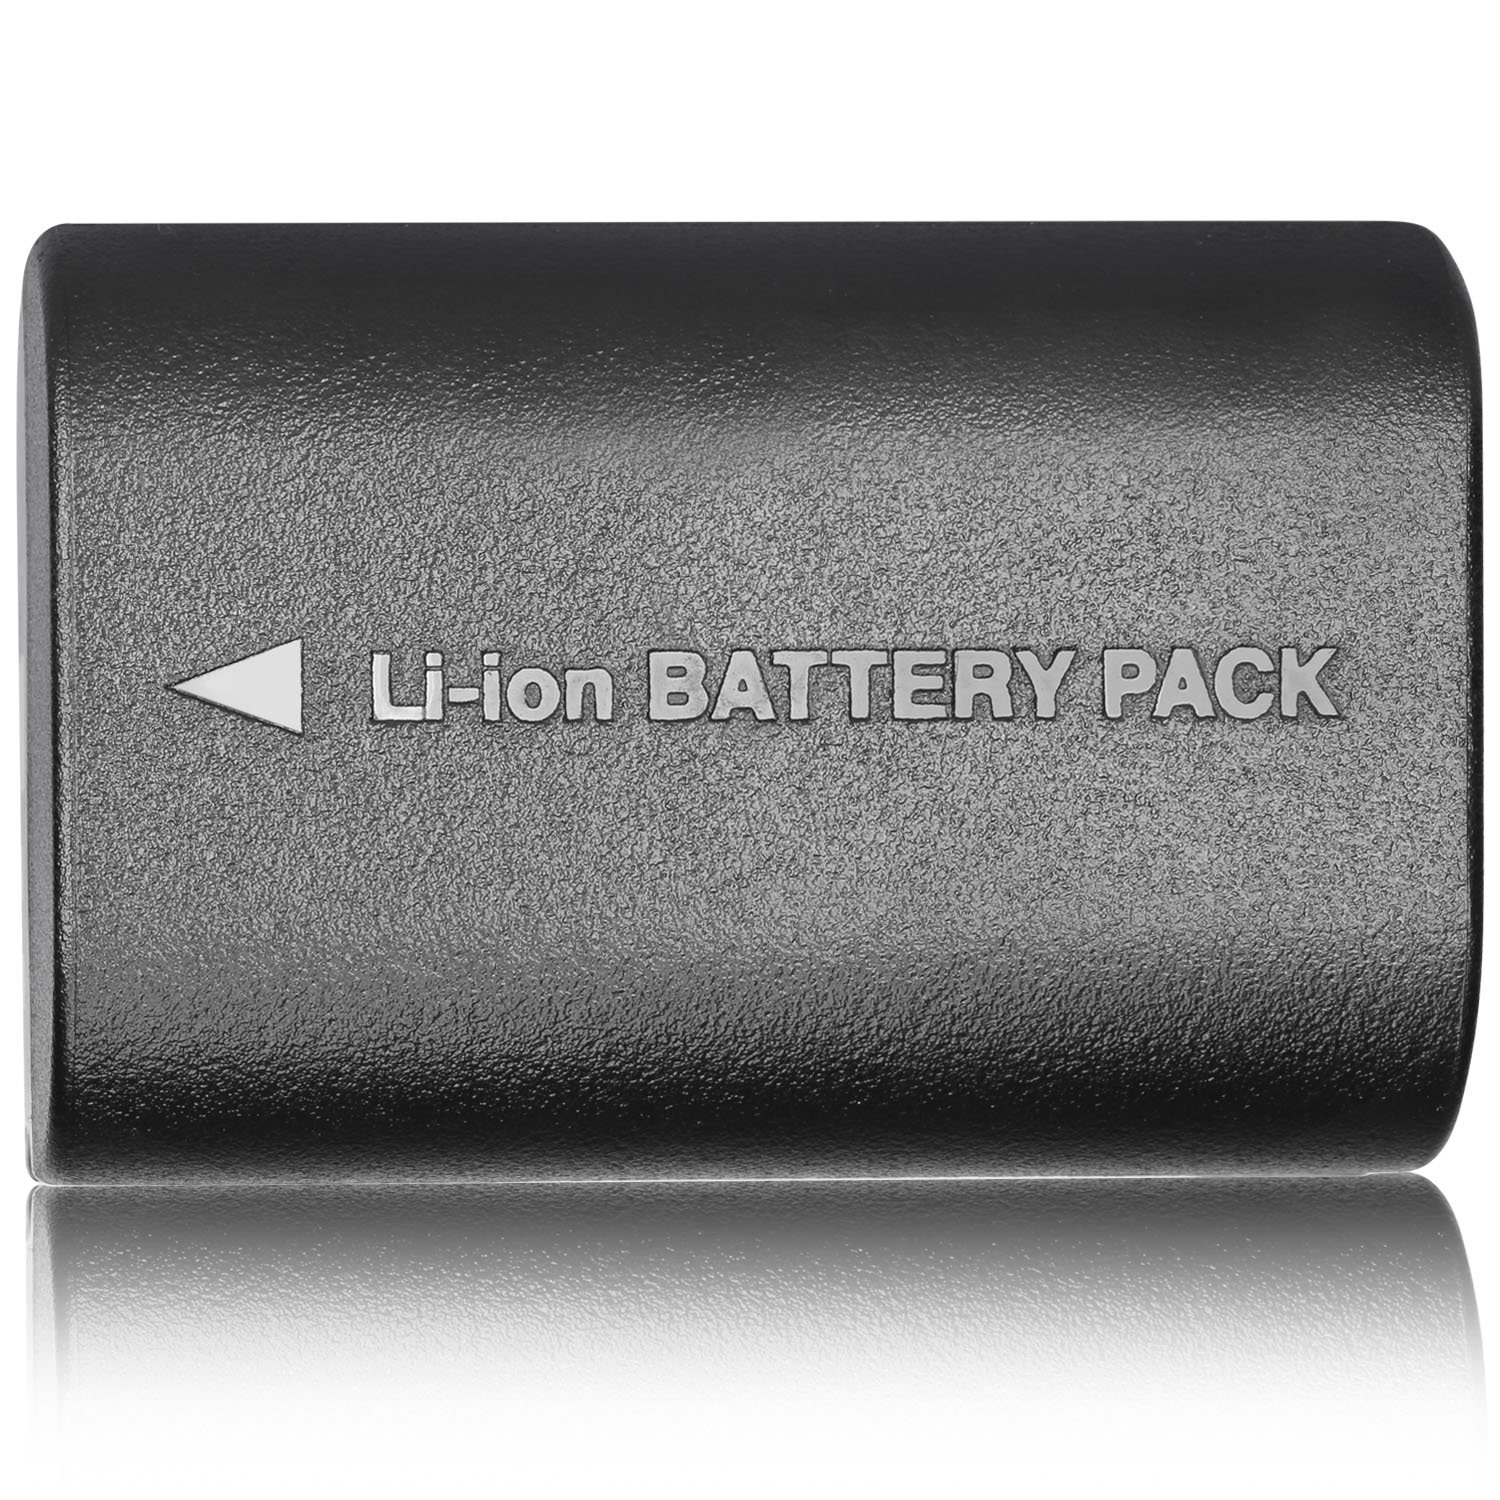 Bateria recargable LP-E6 Compatible con Canon EOS 5D